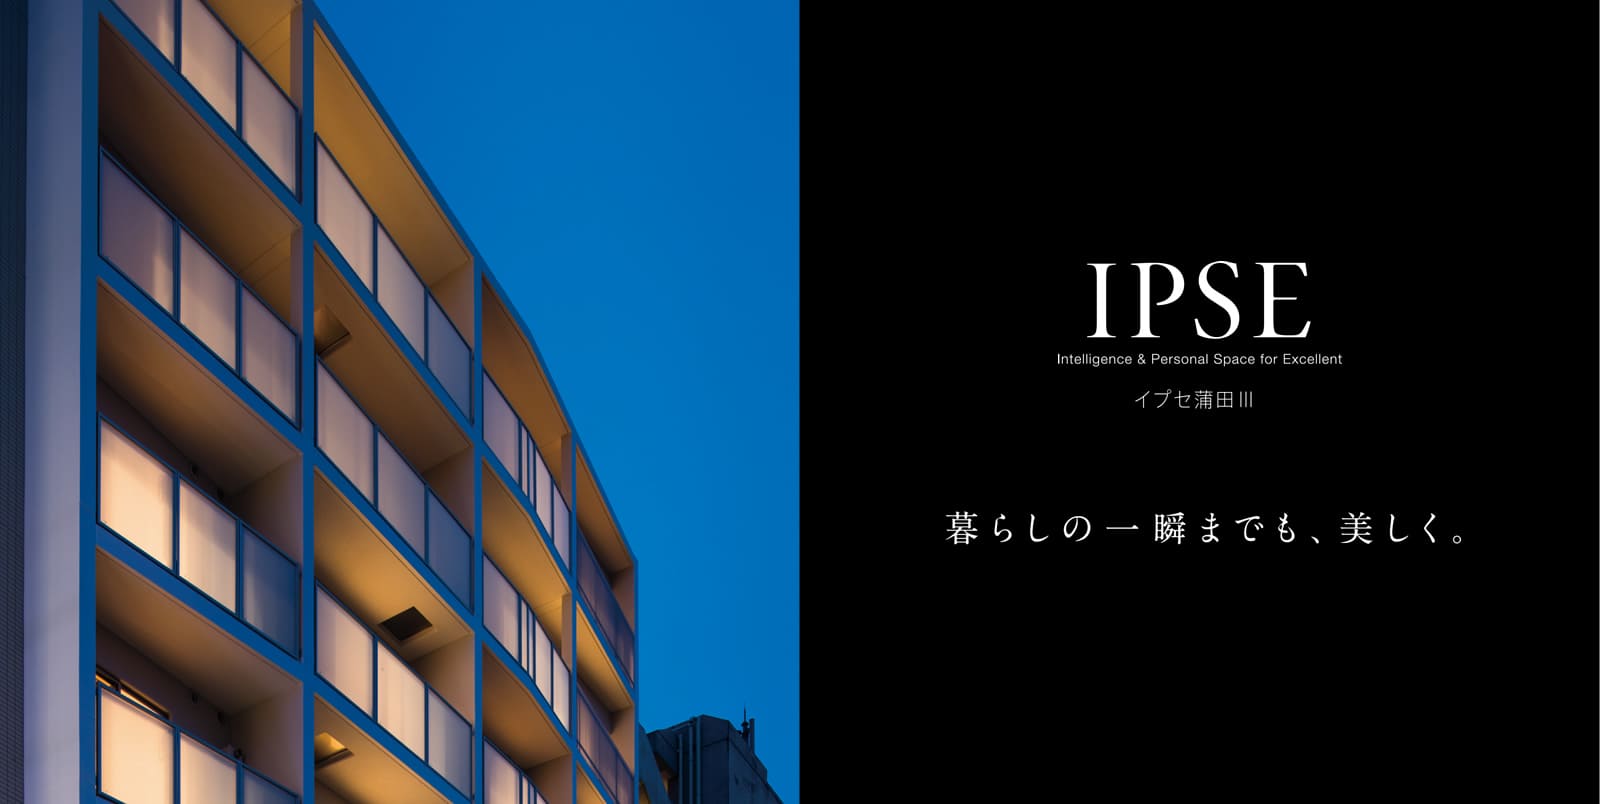 イプセ蒲田Ⅲ IPSE Intelligence & Personal Space for Excellent 暮らしの一瞬までも、美しく